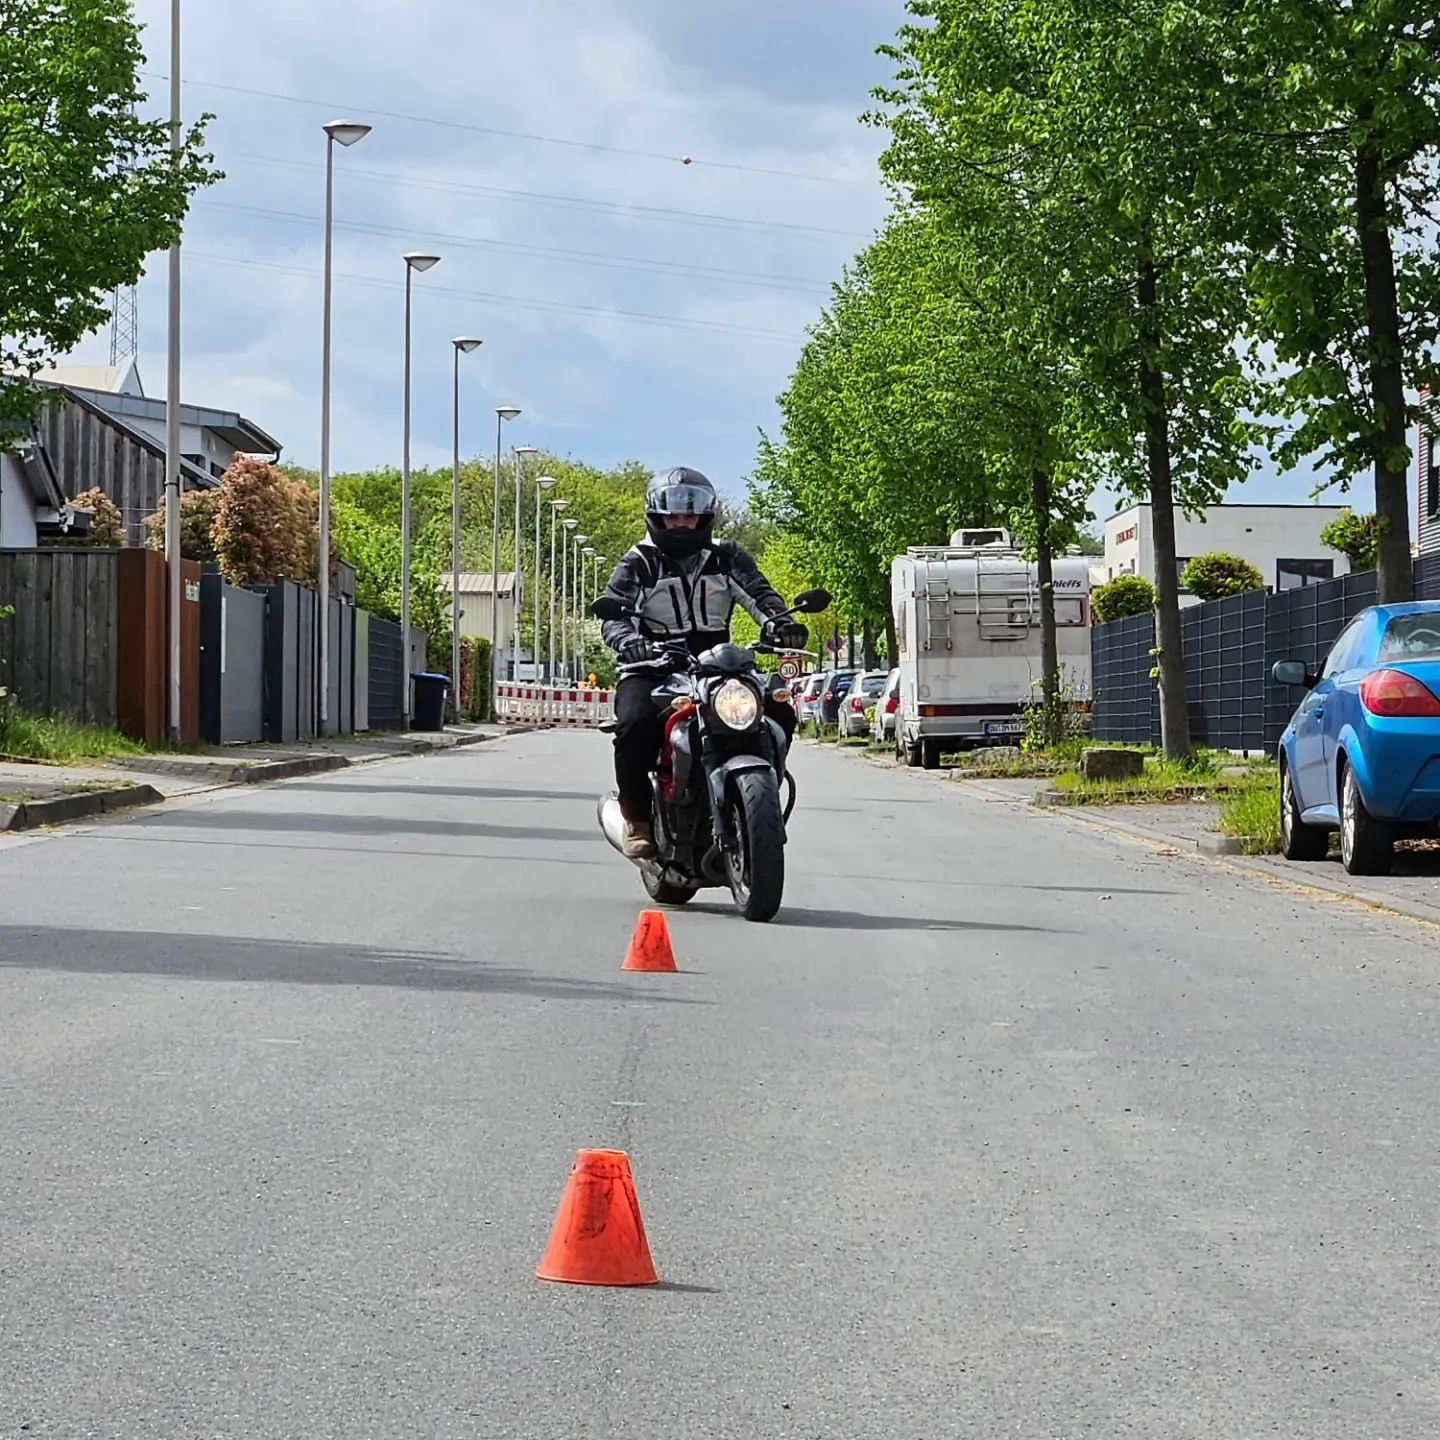 Motorradausbildung, auf einer abgelegenen Straße, Hütchen aufgestellt, um die der Fahrschüler drumherum fahren muss